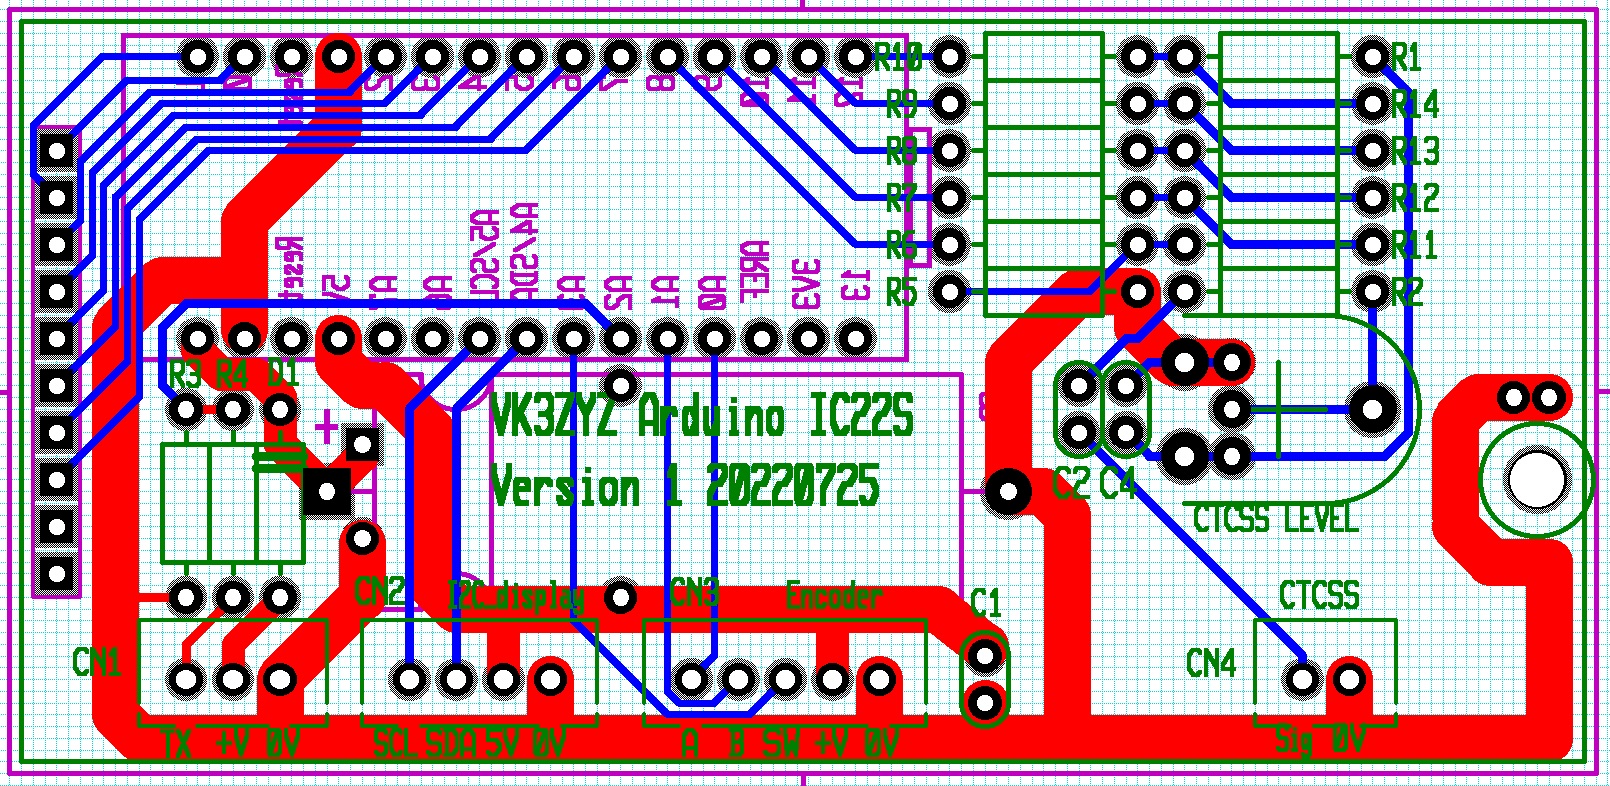 VK3ZYZ Arduino IC22S.jpg